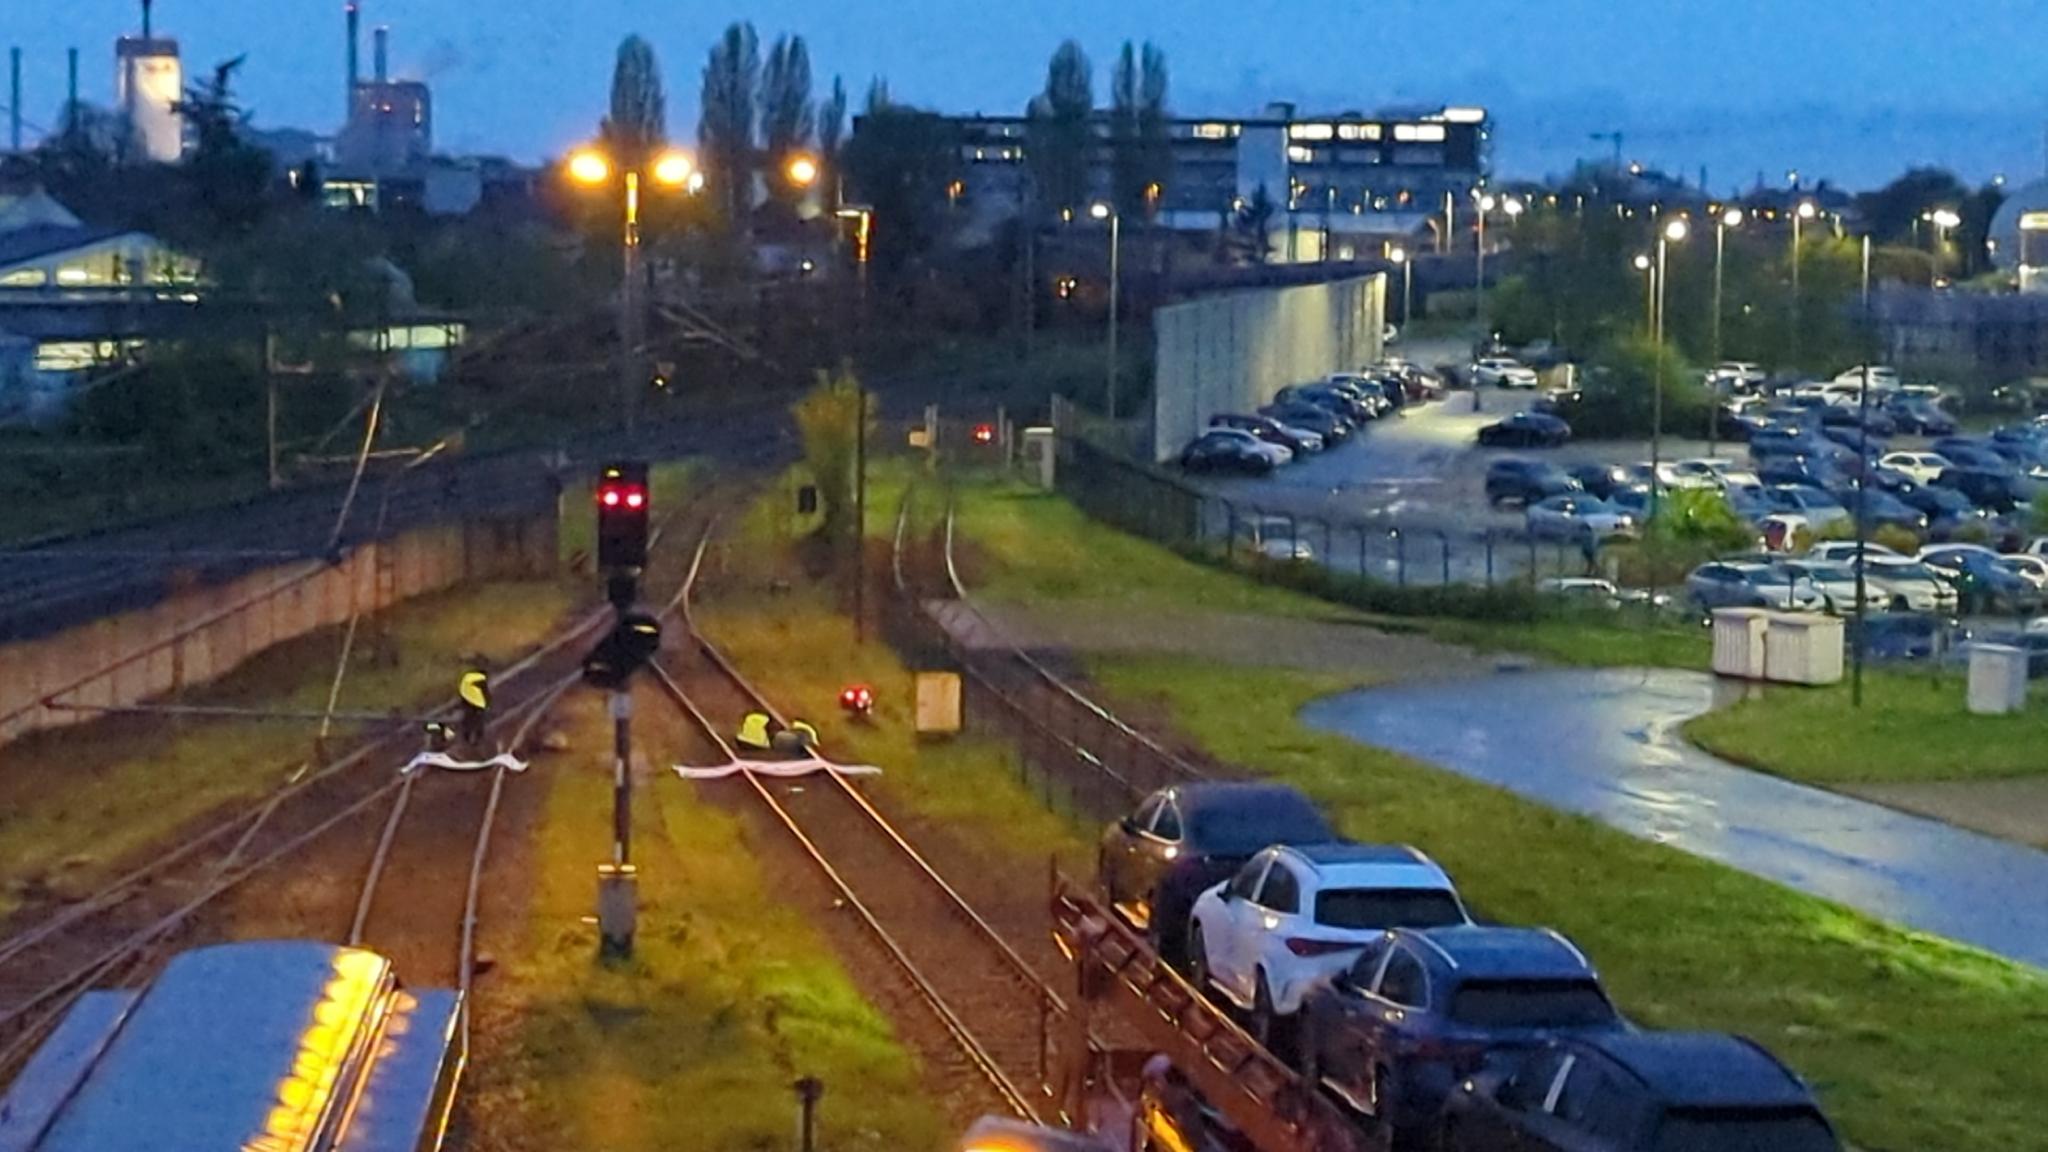 Im Hintergrund ist das Merceds-Benz-Werk in Bremen zu sehen, davo sind Gleise. Auf den Gleisen stehen (vorne im Bild) zwei Züge vor einer roten Signallampe. Dahinter, in der Mitte des Bildes sind mehrere Menschen mit Transparenten auf den Gleisen zu sehen.